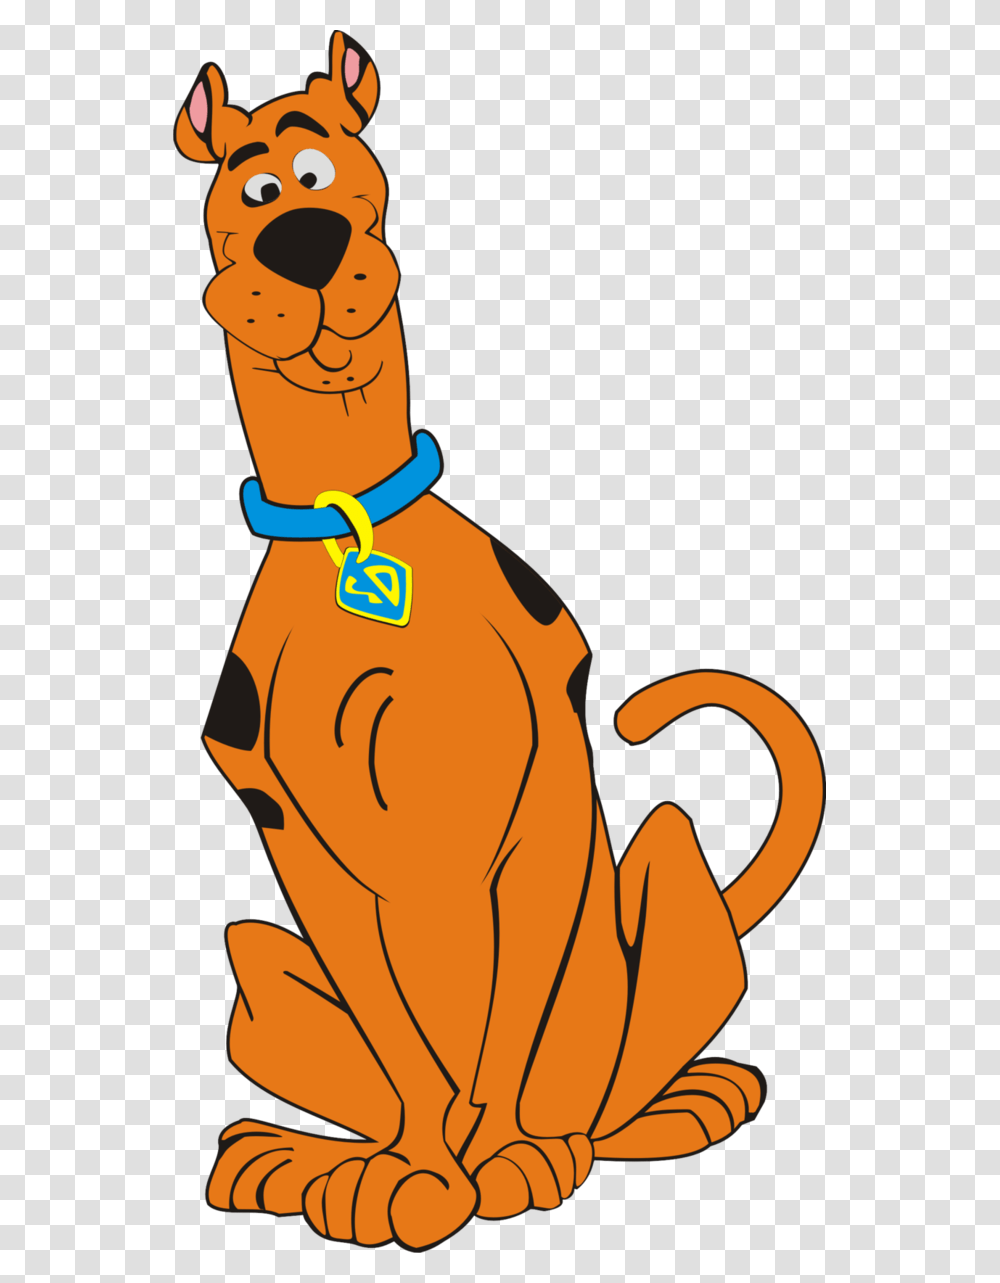 Scooby Doo Vector Imagenes De Scooby Doo Vector, Animal, Mammal, Hand, Pet Transparent Png